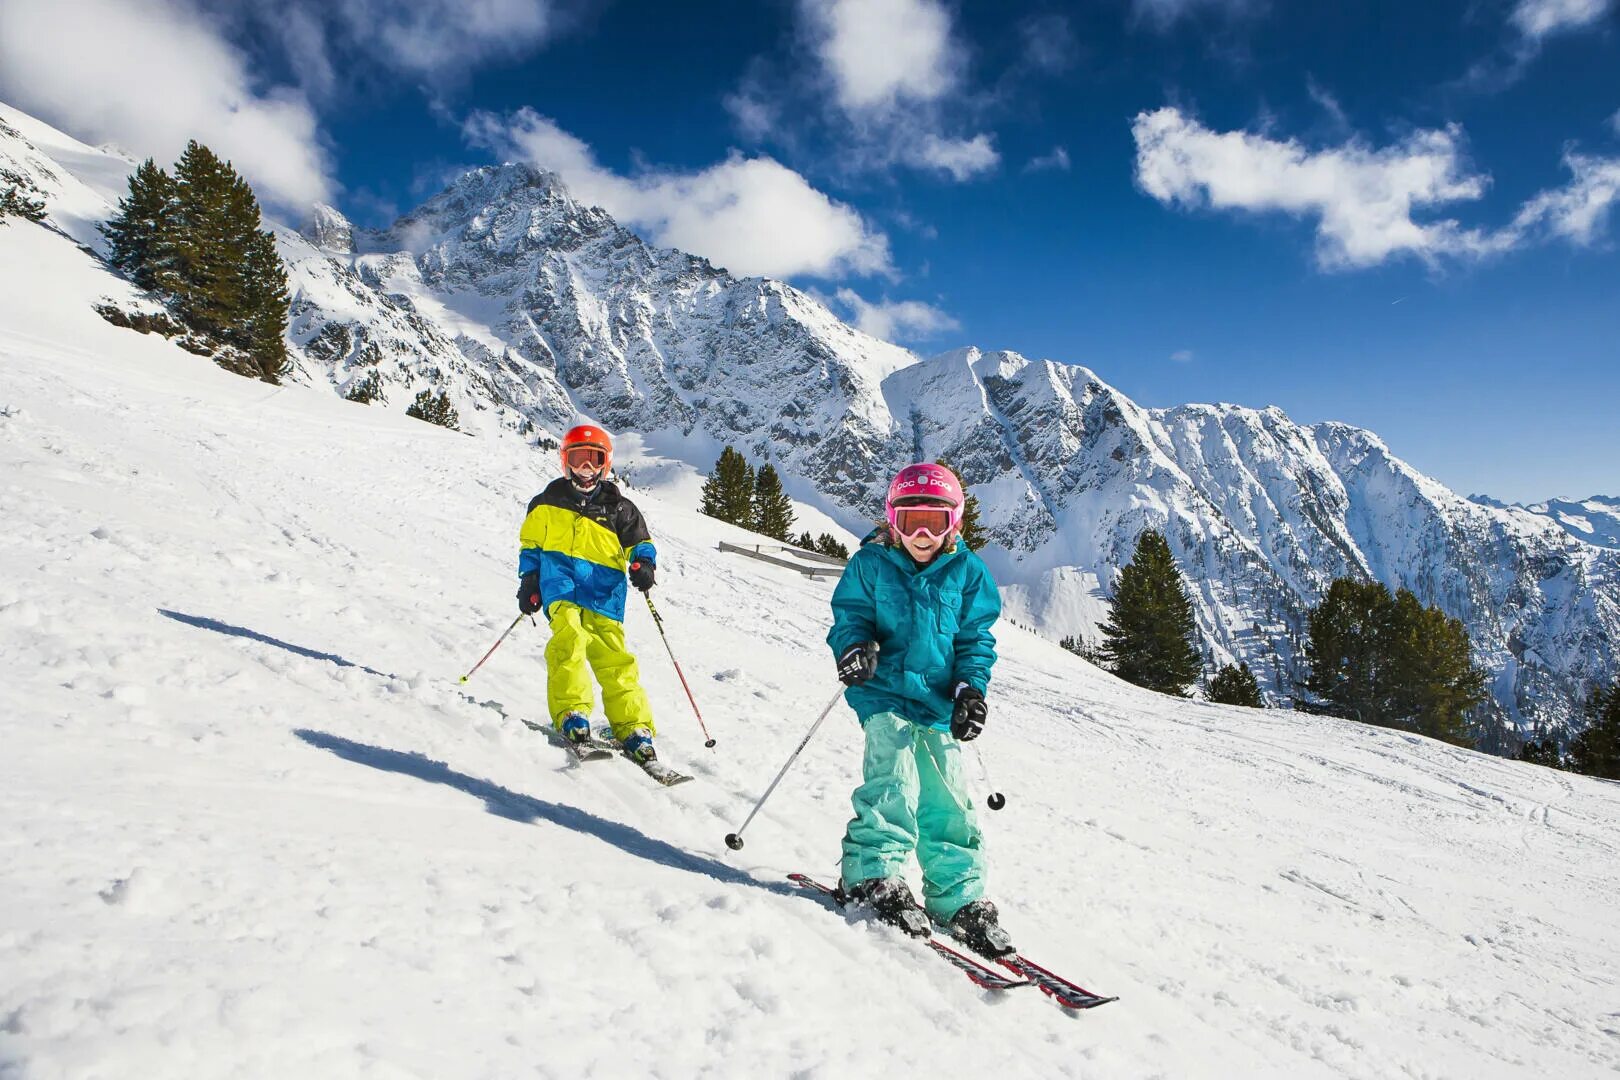 Skiing holiday. Горнолыжка Сербии Копаоник трассы. Горы лыжи. Кататься на лыжах. Катание на лыжах в горах.